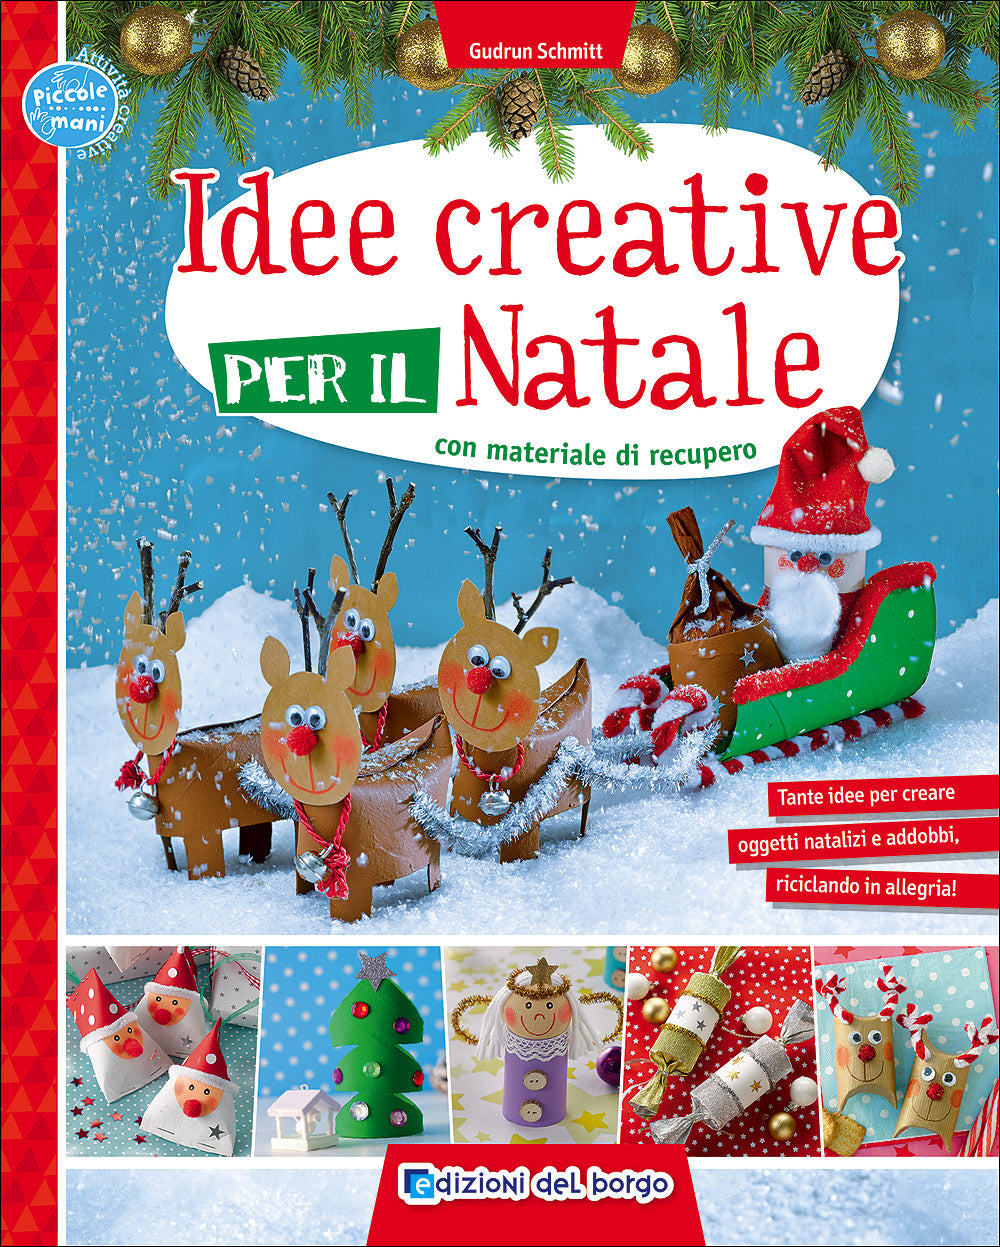 Idee creative per il Natale con materiale di recupero::Tante idee per creare oggetti natalizi e addobbi, riciclando in allegria!